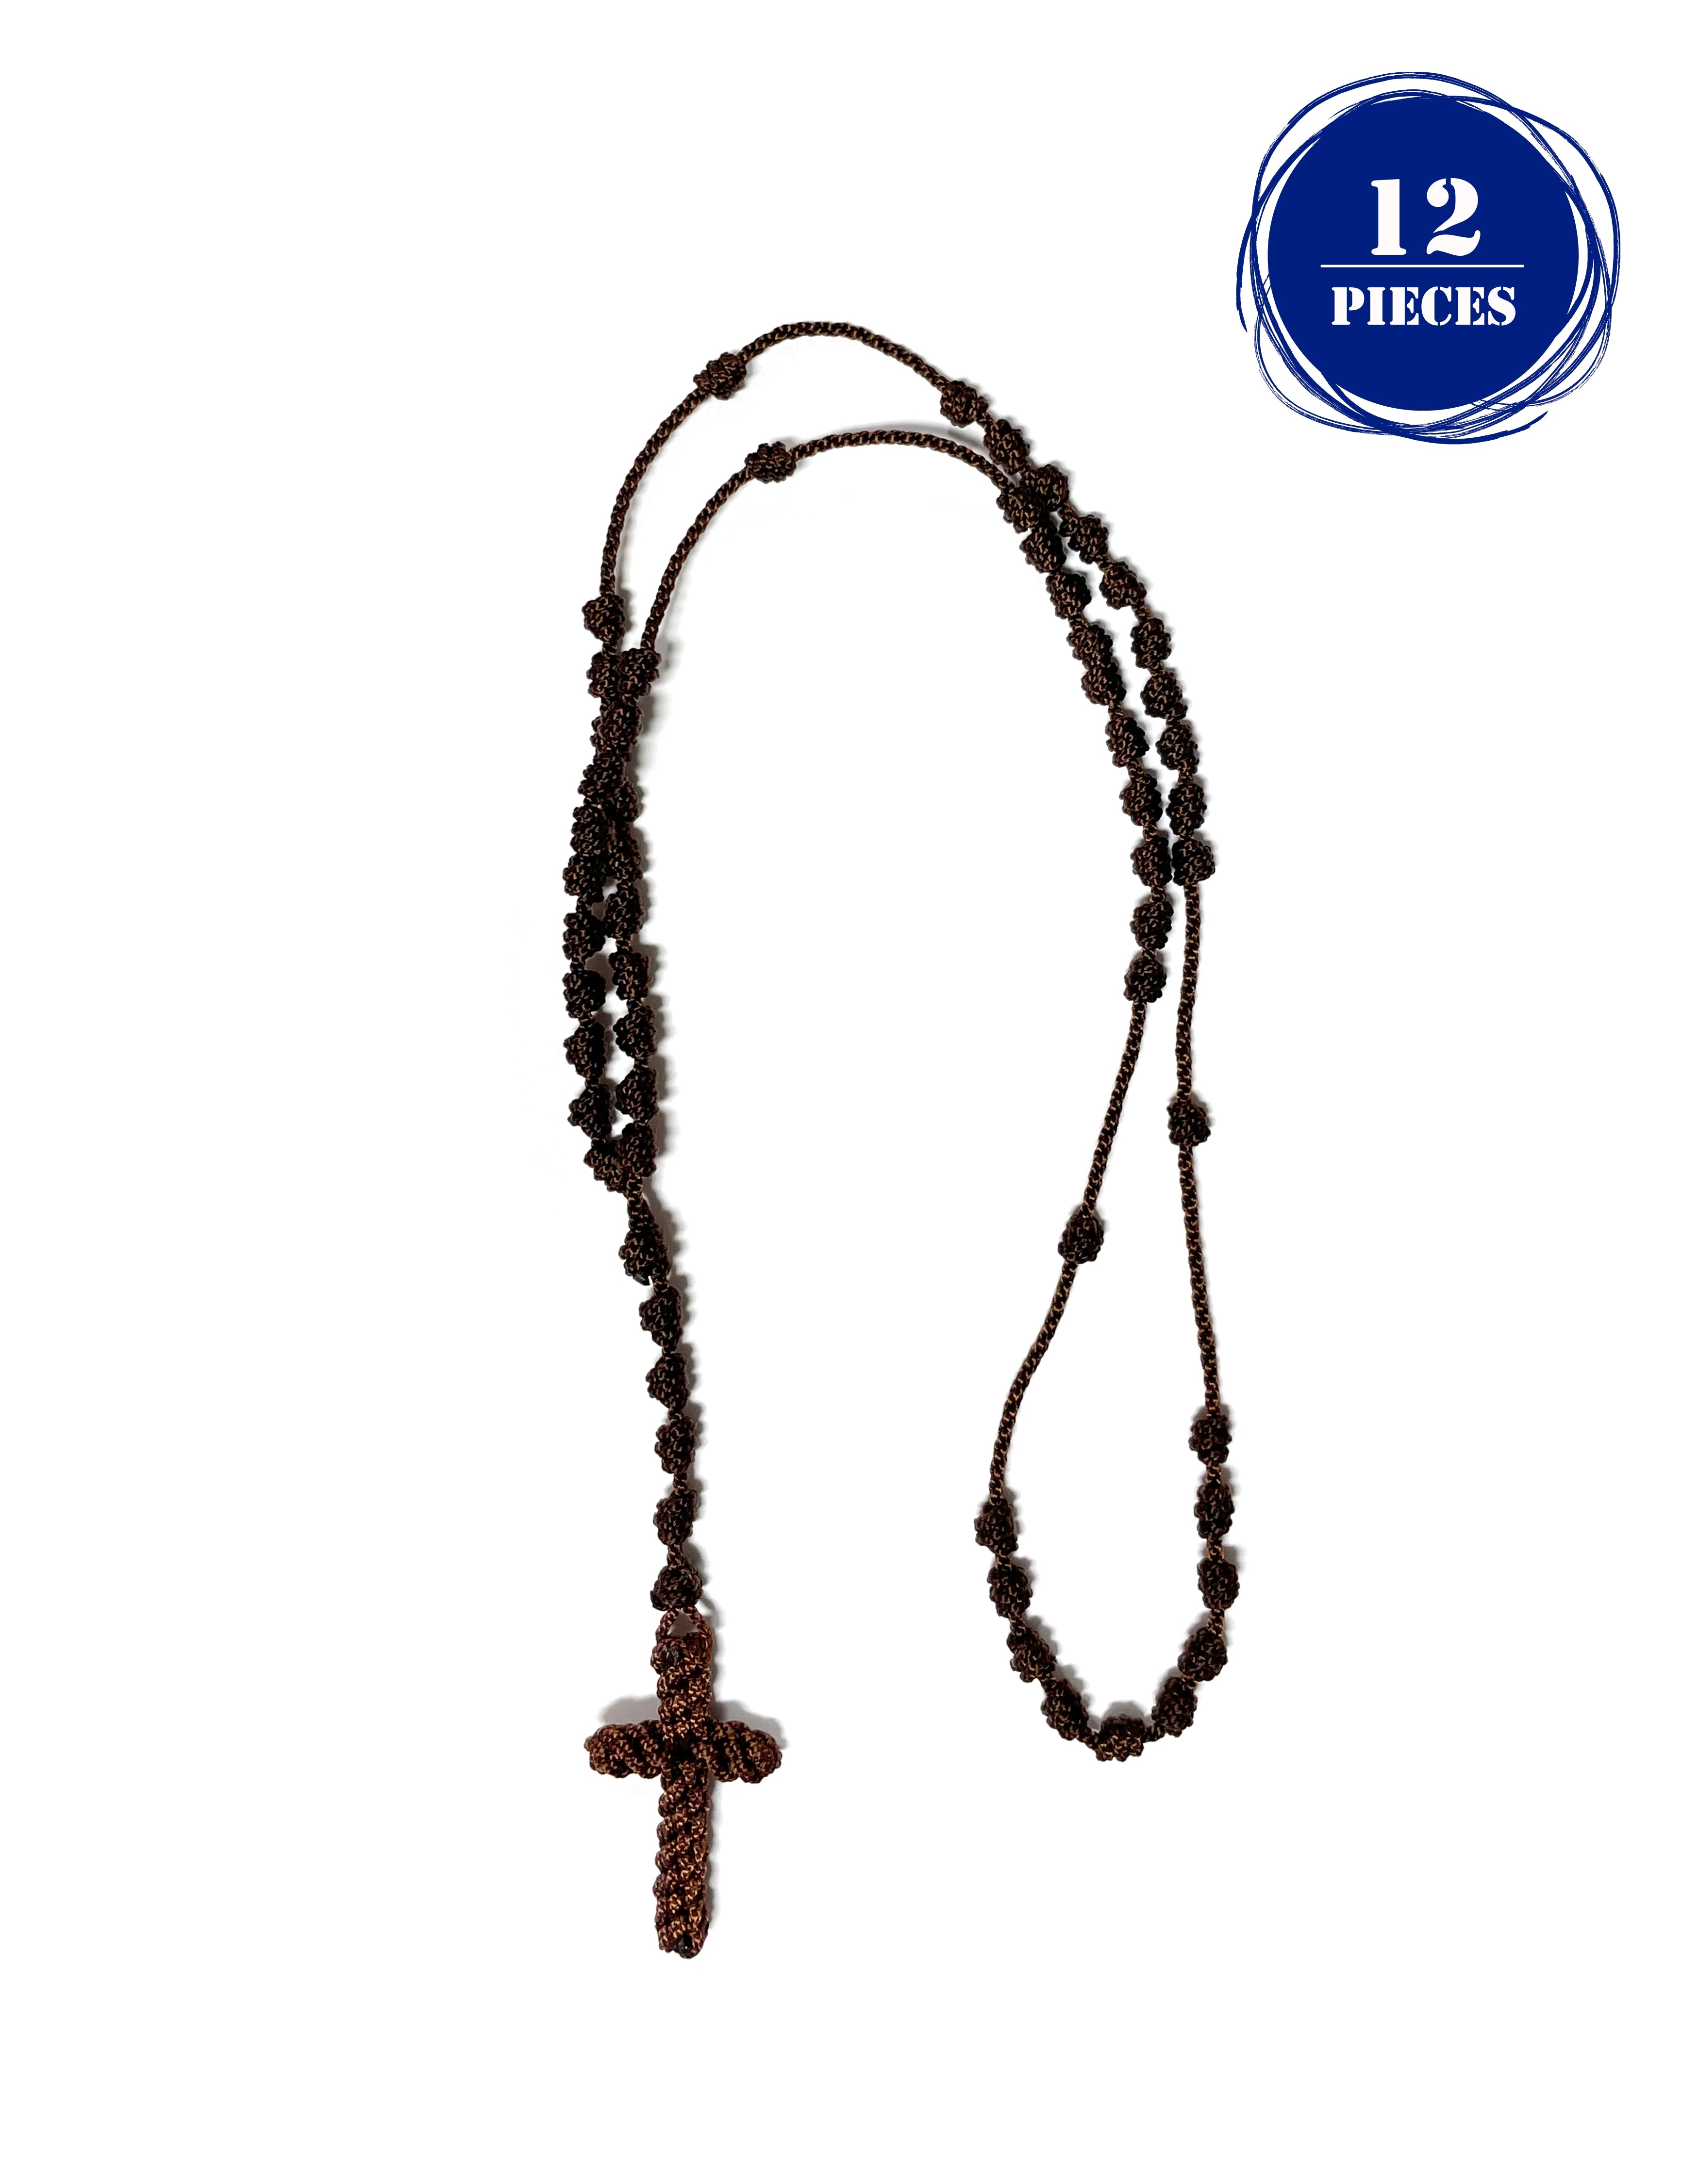 Knotted Rosary - Cord Rosary, Thread Rosary - Handmade Rosary. Rosarios de cordón anudado Y Cruz Tejida Brown / 12 Pieces